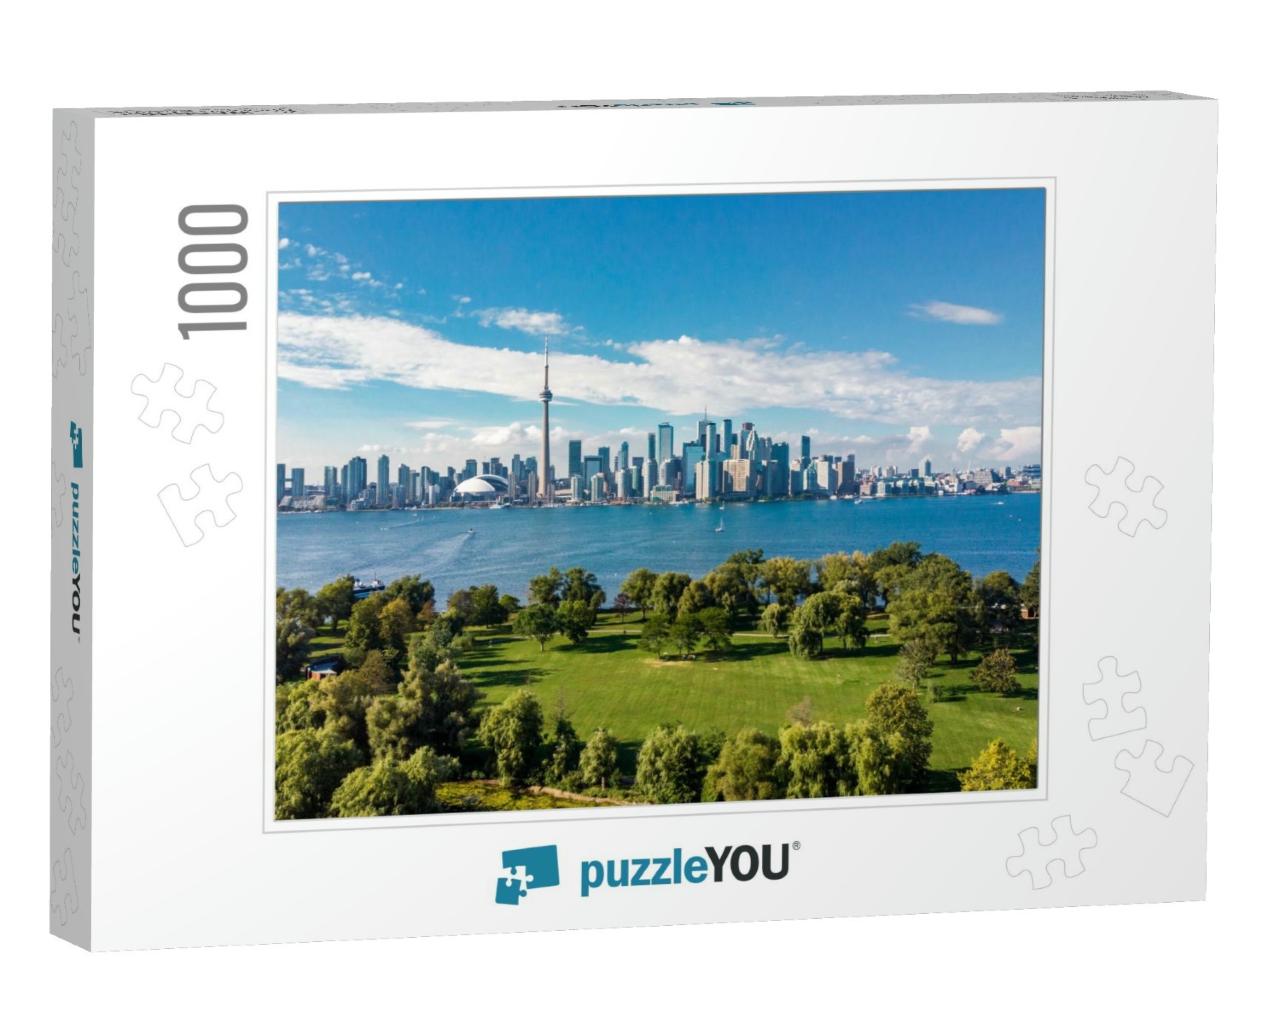 Toronto Skyline & Lake Ontario Aerial View, Toronto, Onta... Jigsaw Puzzle with 1000 pieces